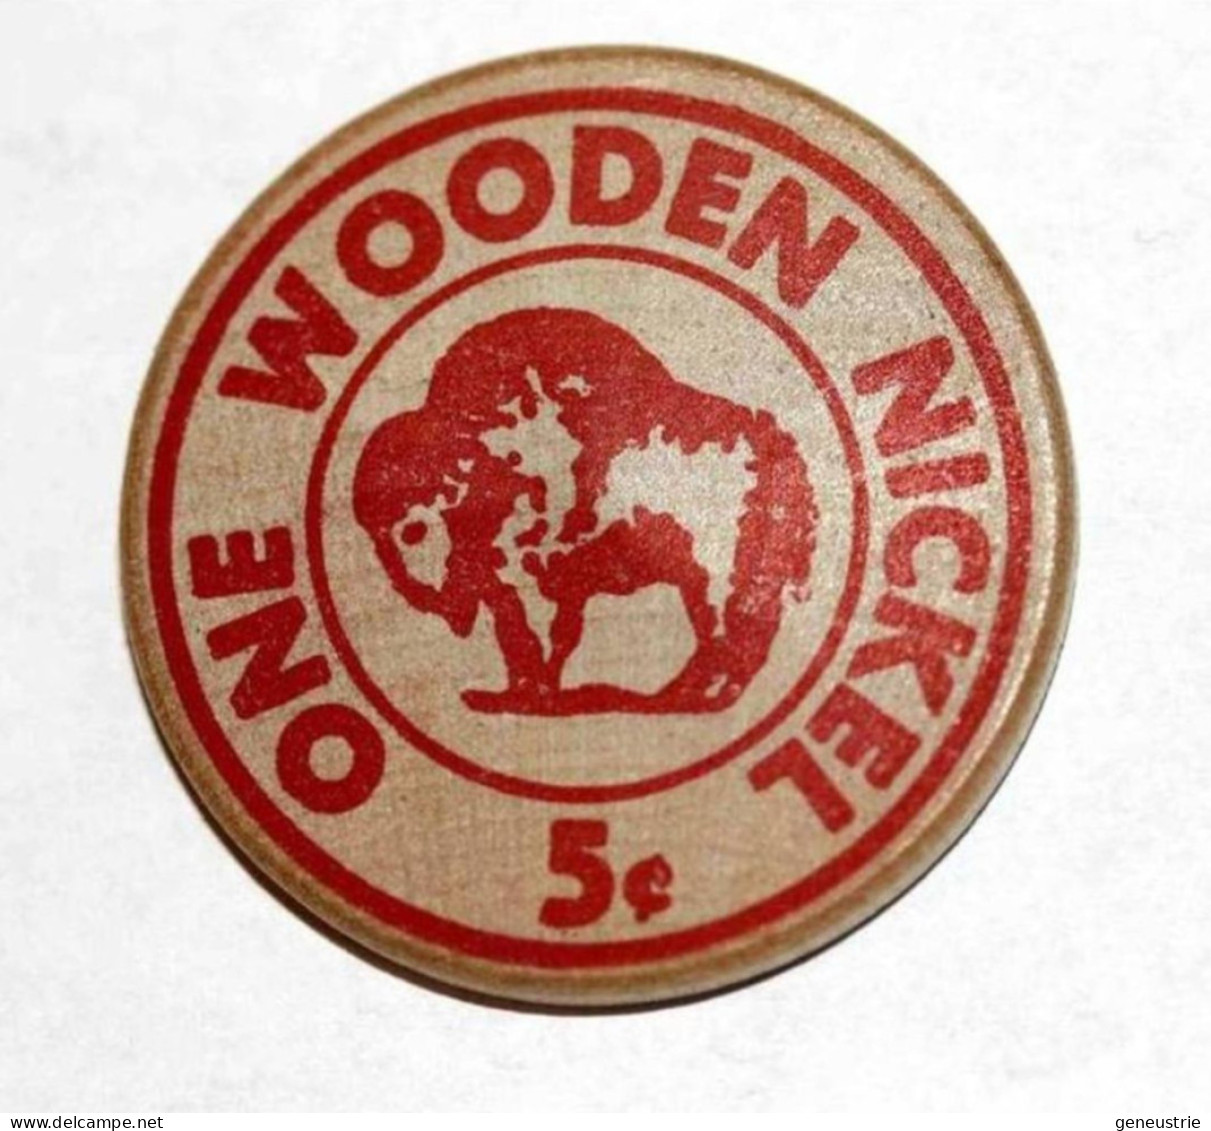 Rare Wooden Token 3c - Wooden Nickel - Jeton Bois Monnaie Nécessité 5 Cents - Bison - Coca-Cola - Etats-Unis - Notgeld